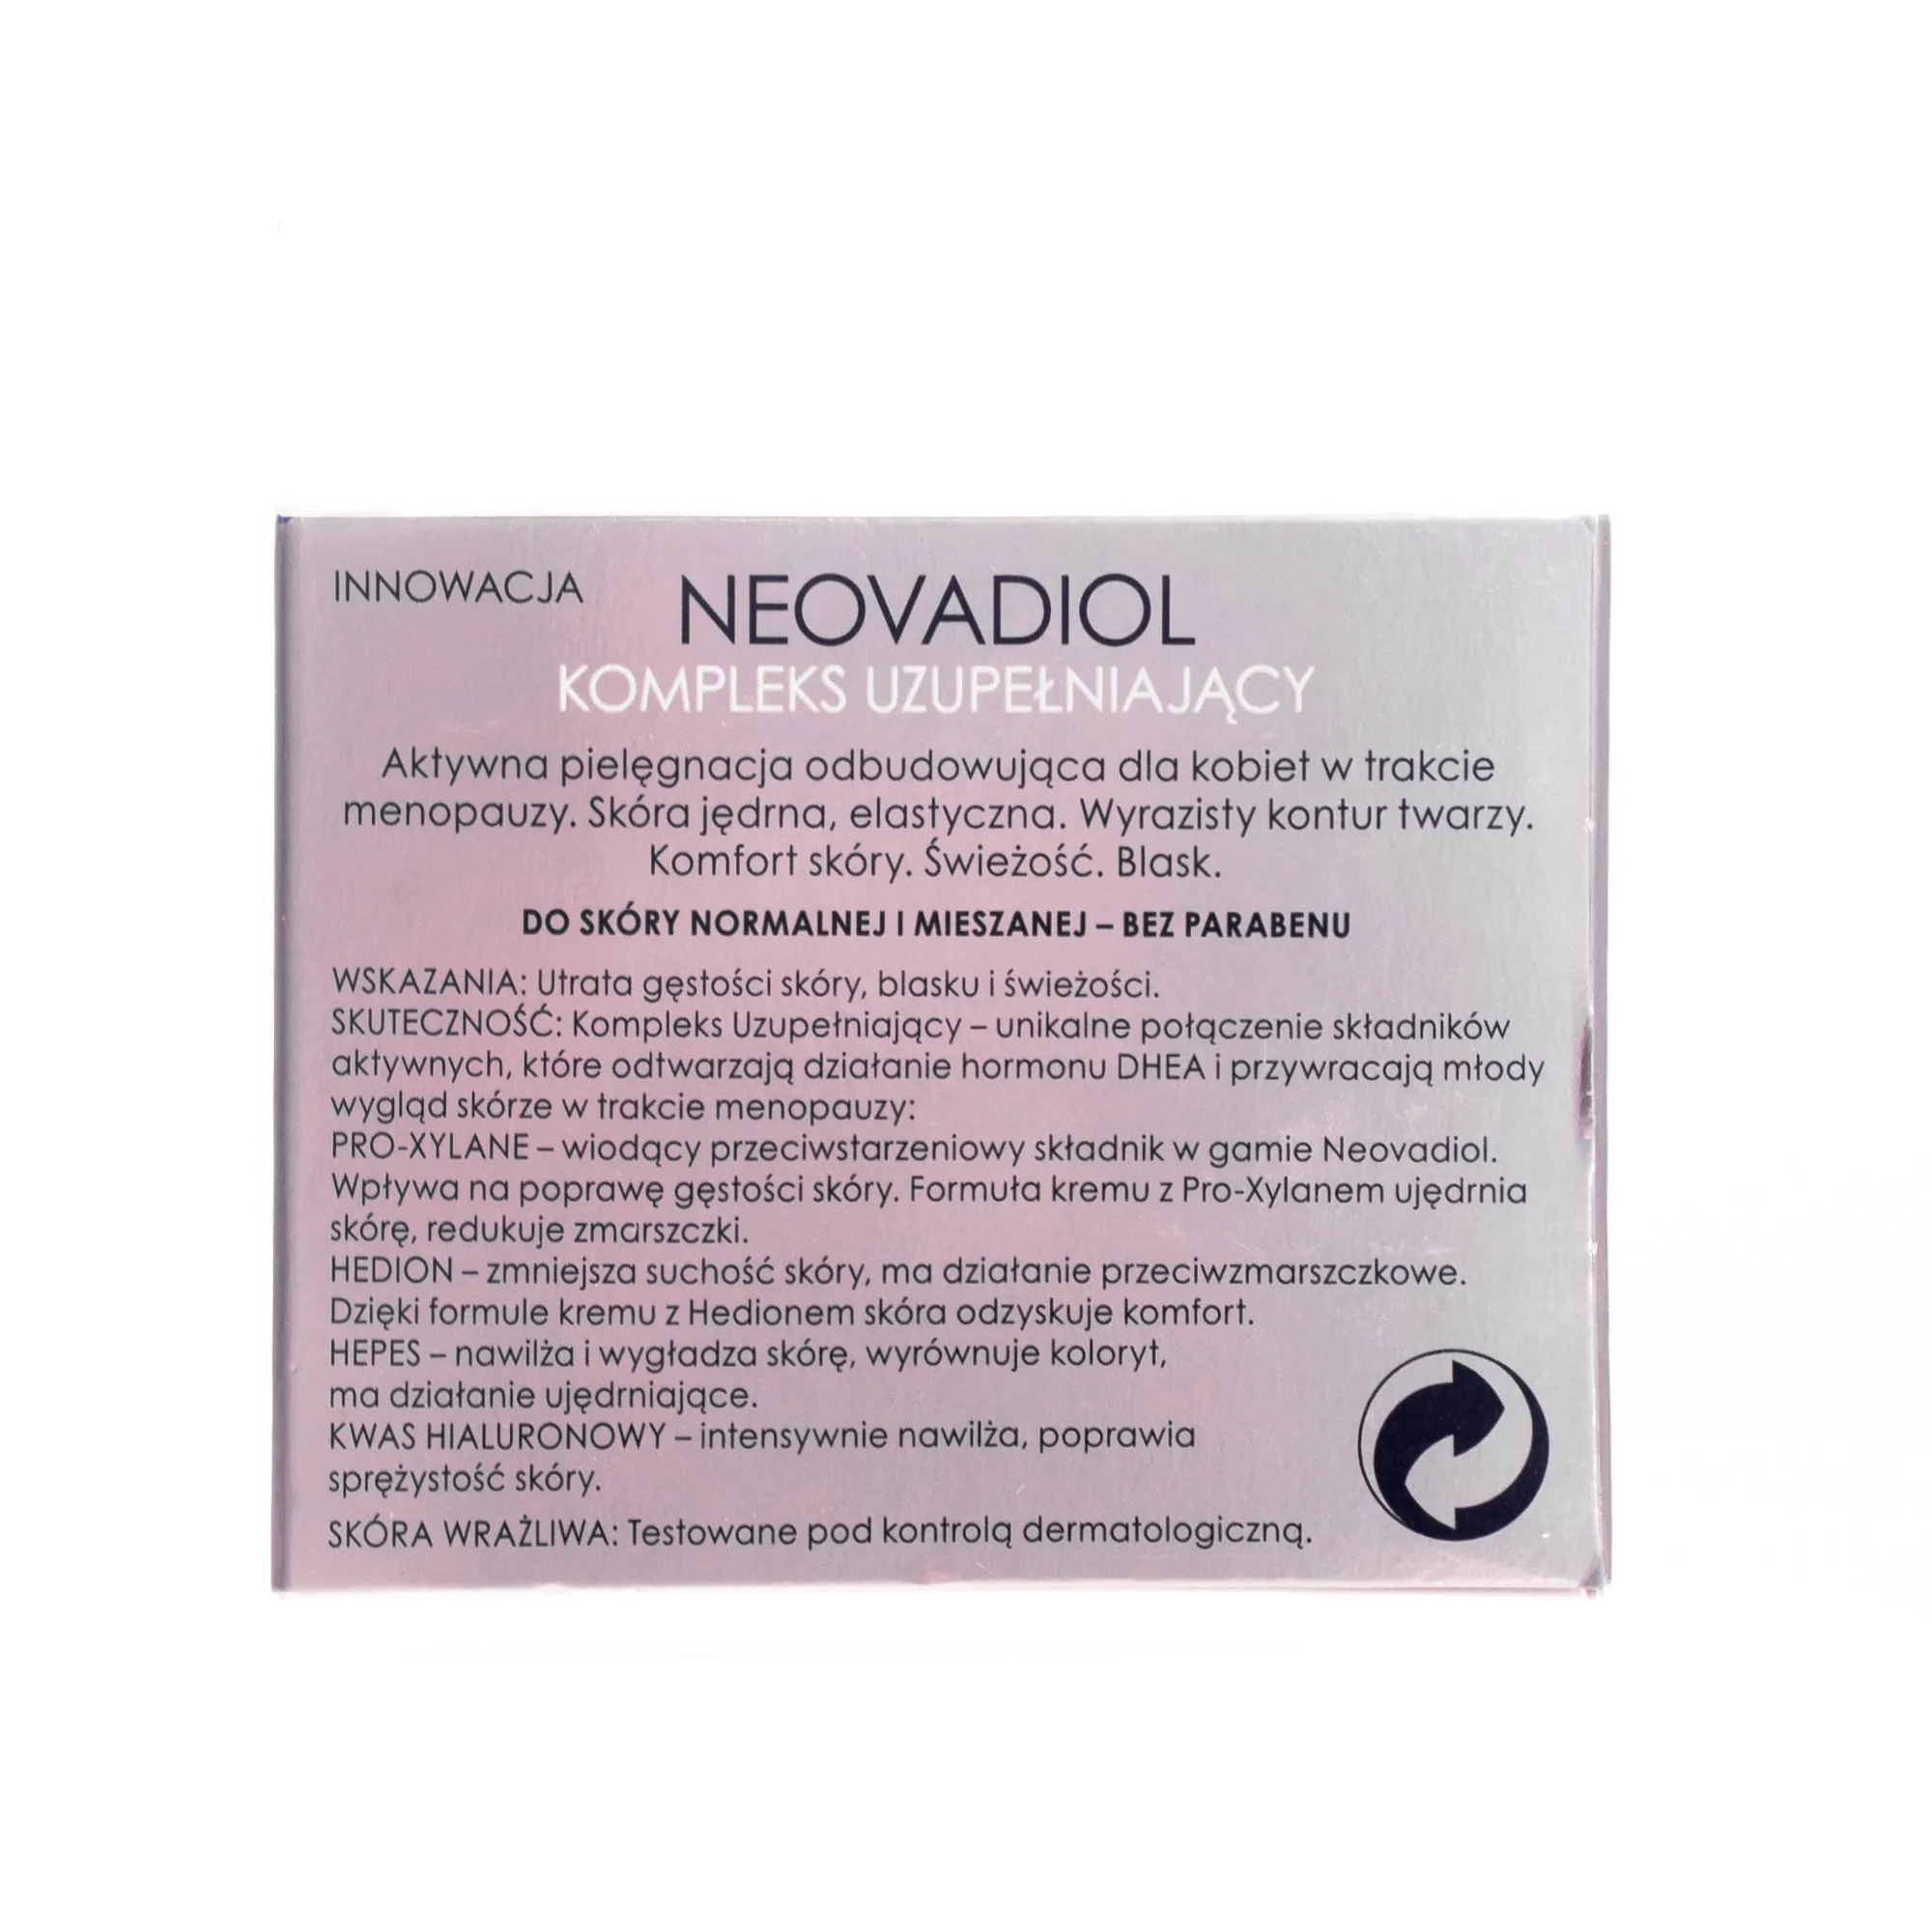 Vichy Laboratories Neovadiol Kompleks uzupełniający, aktywna pielęgnacja odbudowująca, do skóry normalnej i mieszanej, 50 ml 